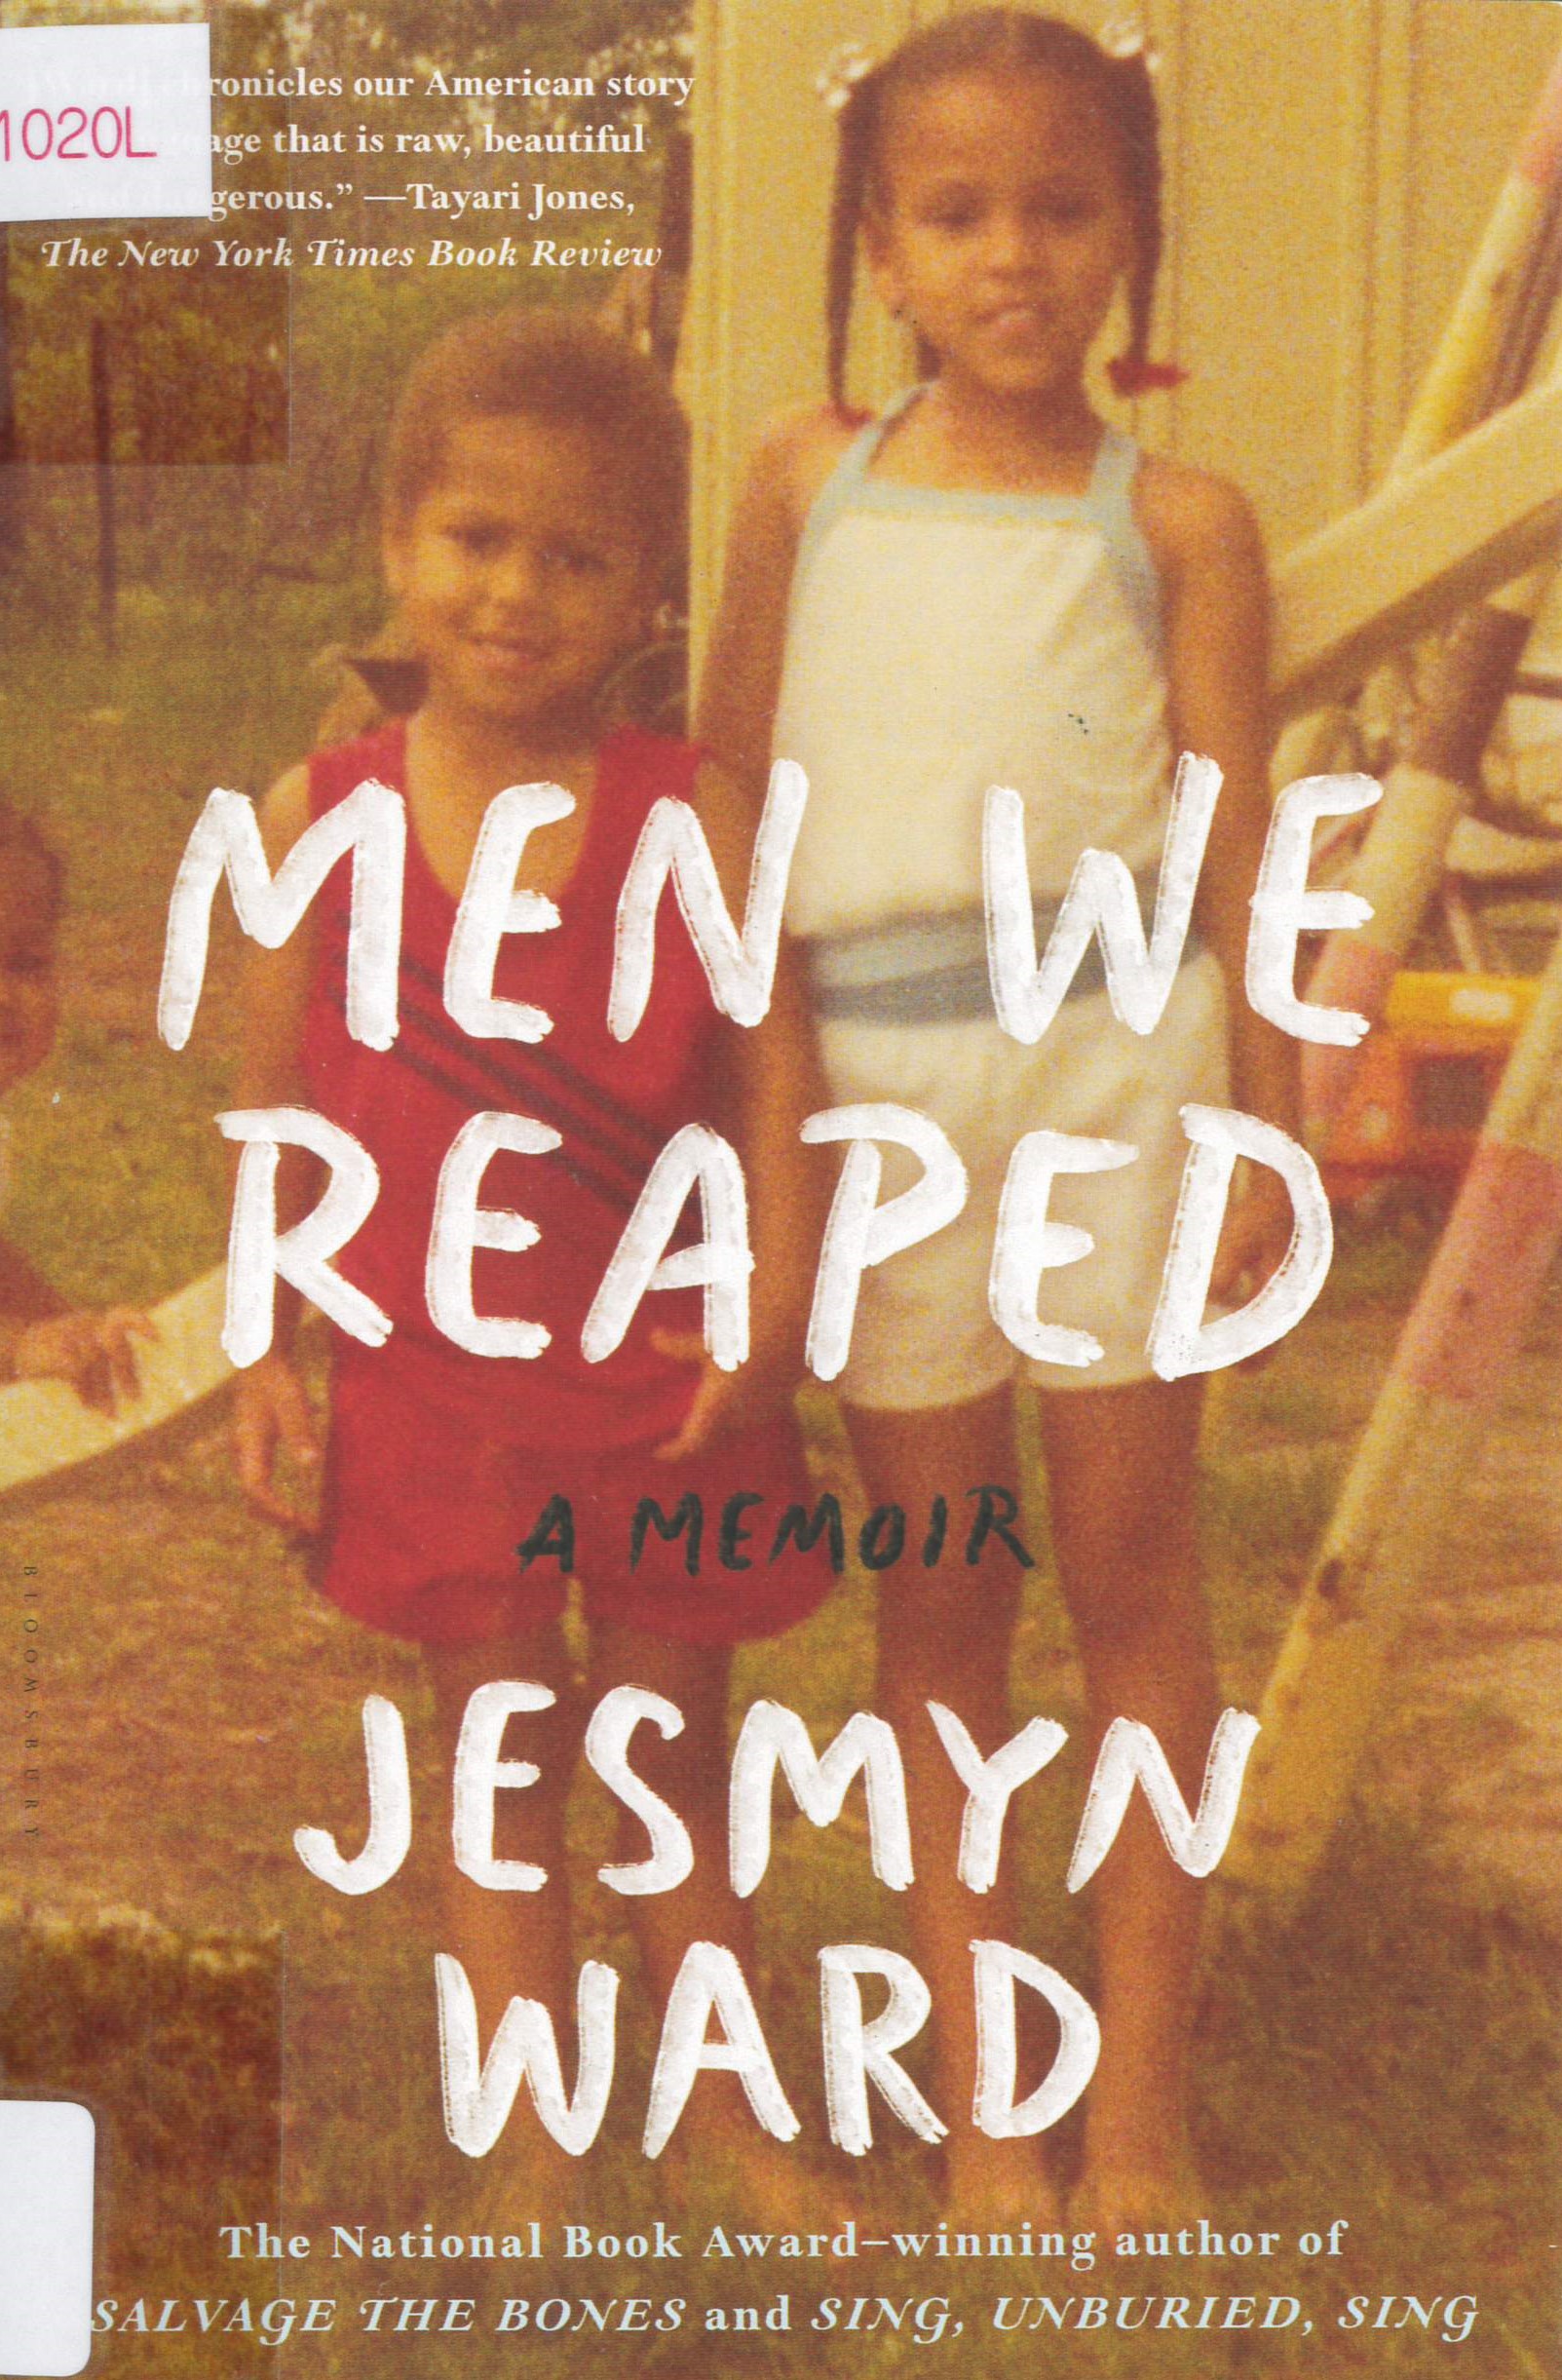 Men we reaped : a memoir /